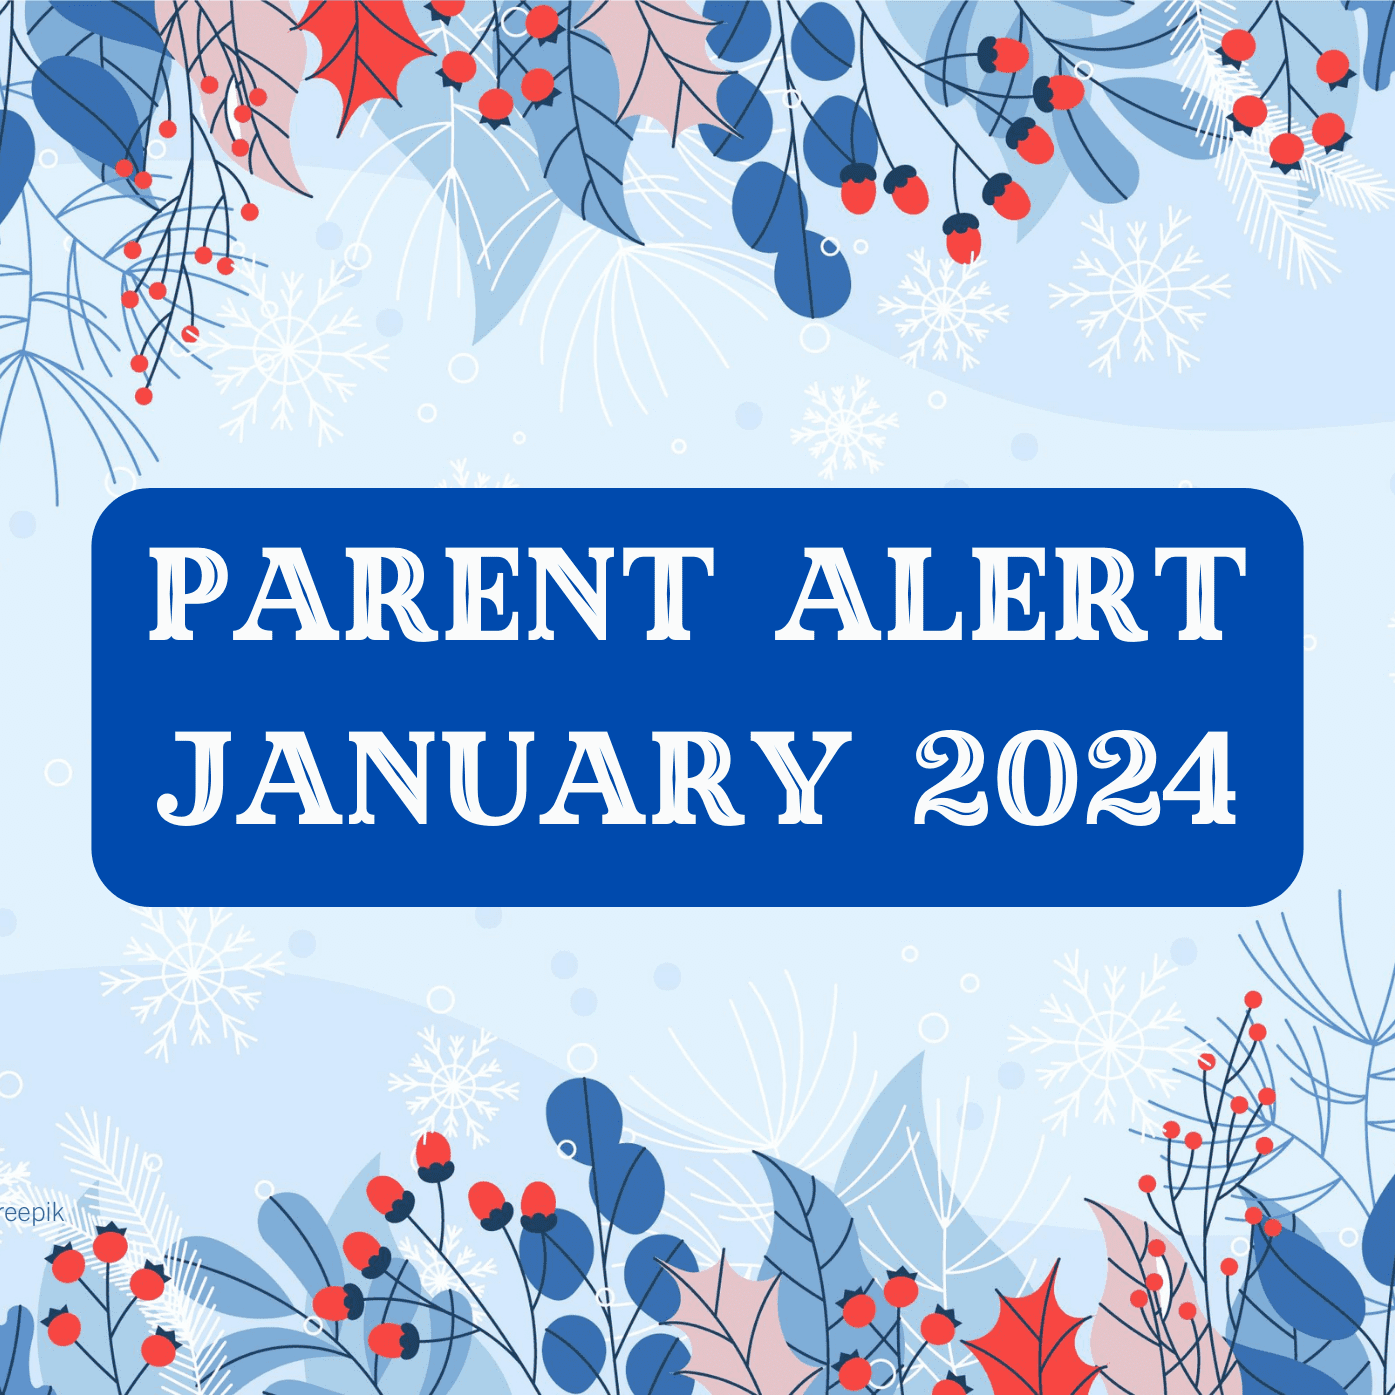 Parent Alert December 2023 Background Image (6)